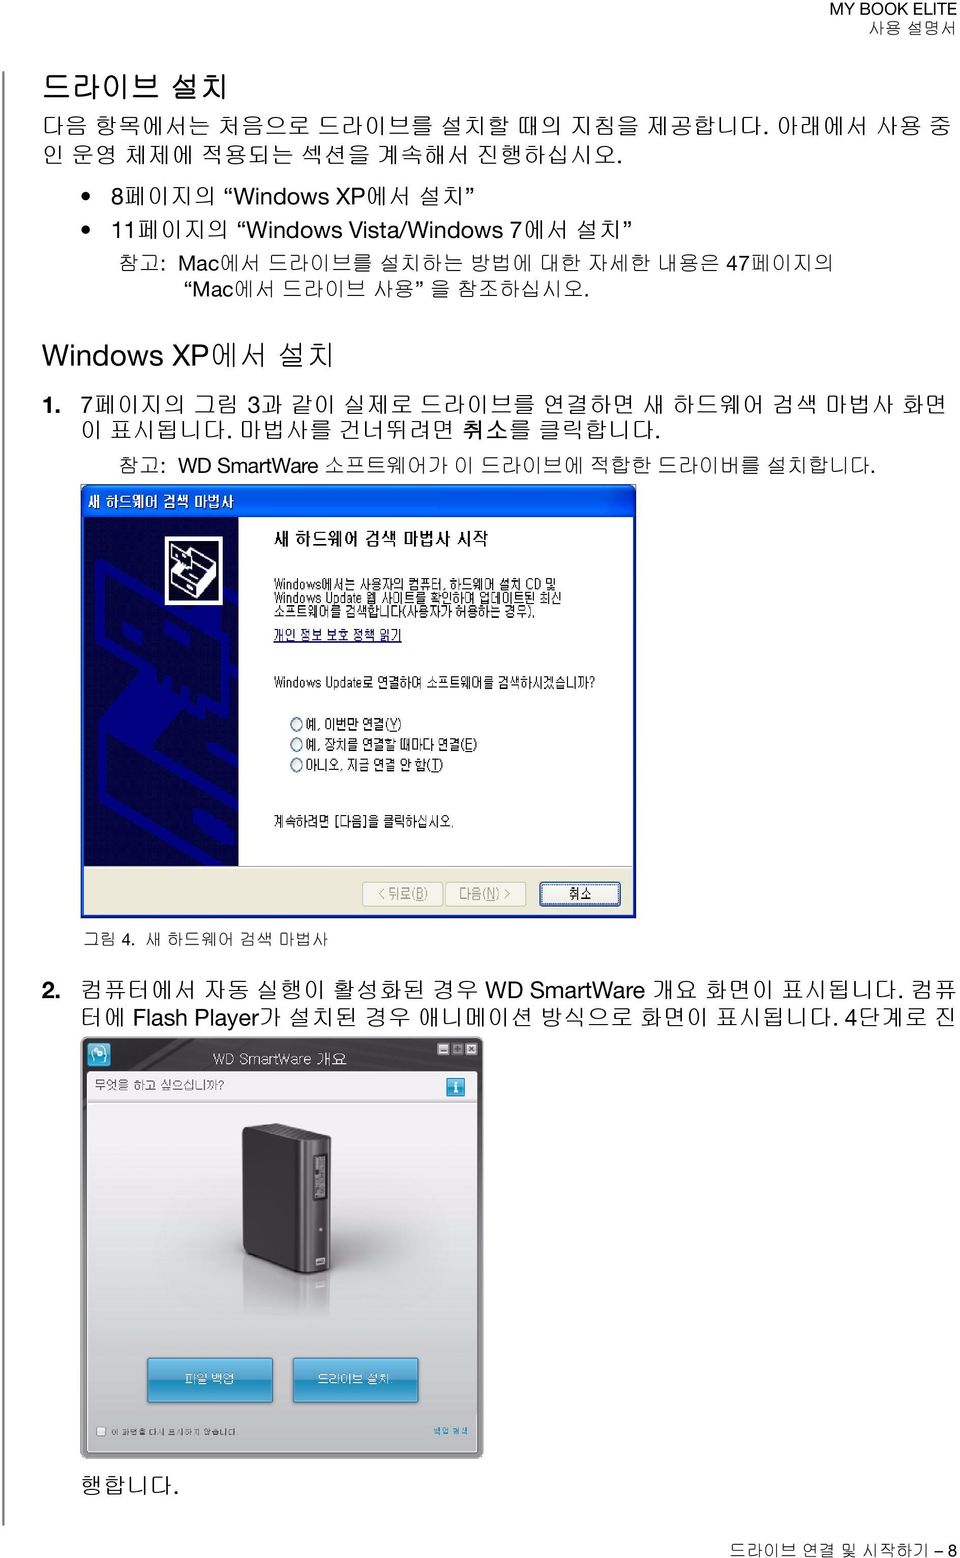 Windows XP에서 설치 1. 7페이지의 그림 3과 같이 실제로 드라이브를 연결하면 새 하드웨어 검색 마법사 화면 이 표시됩니다. 마법사를 건너뛰려면 취소를 클릭합니다.